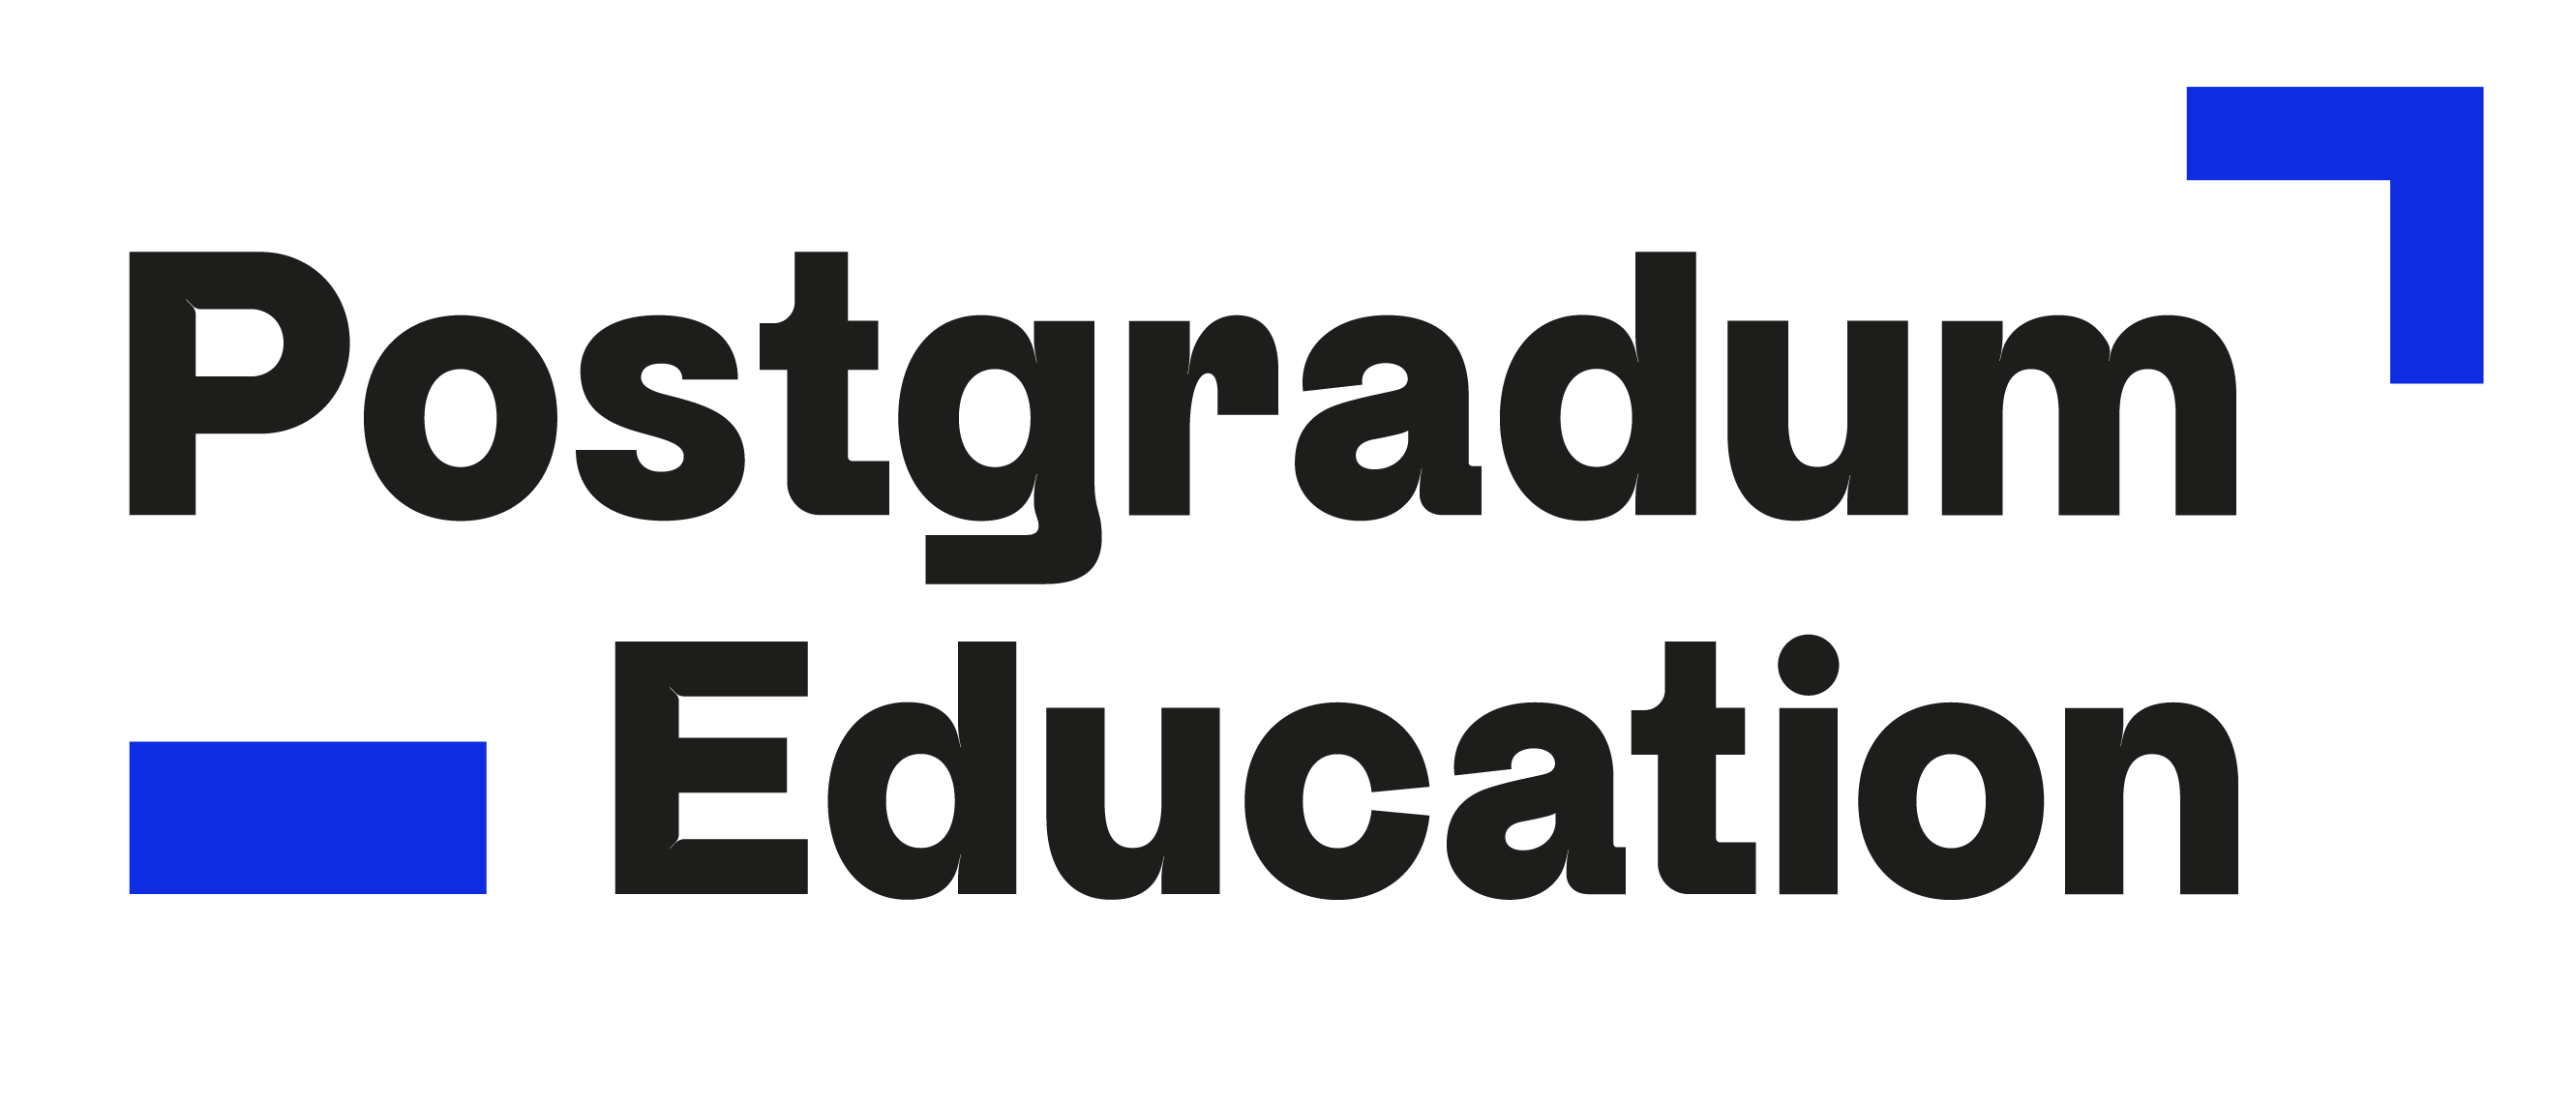 Campus Online - Postgradum Education